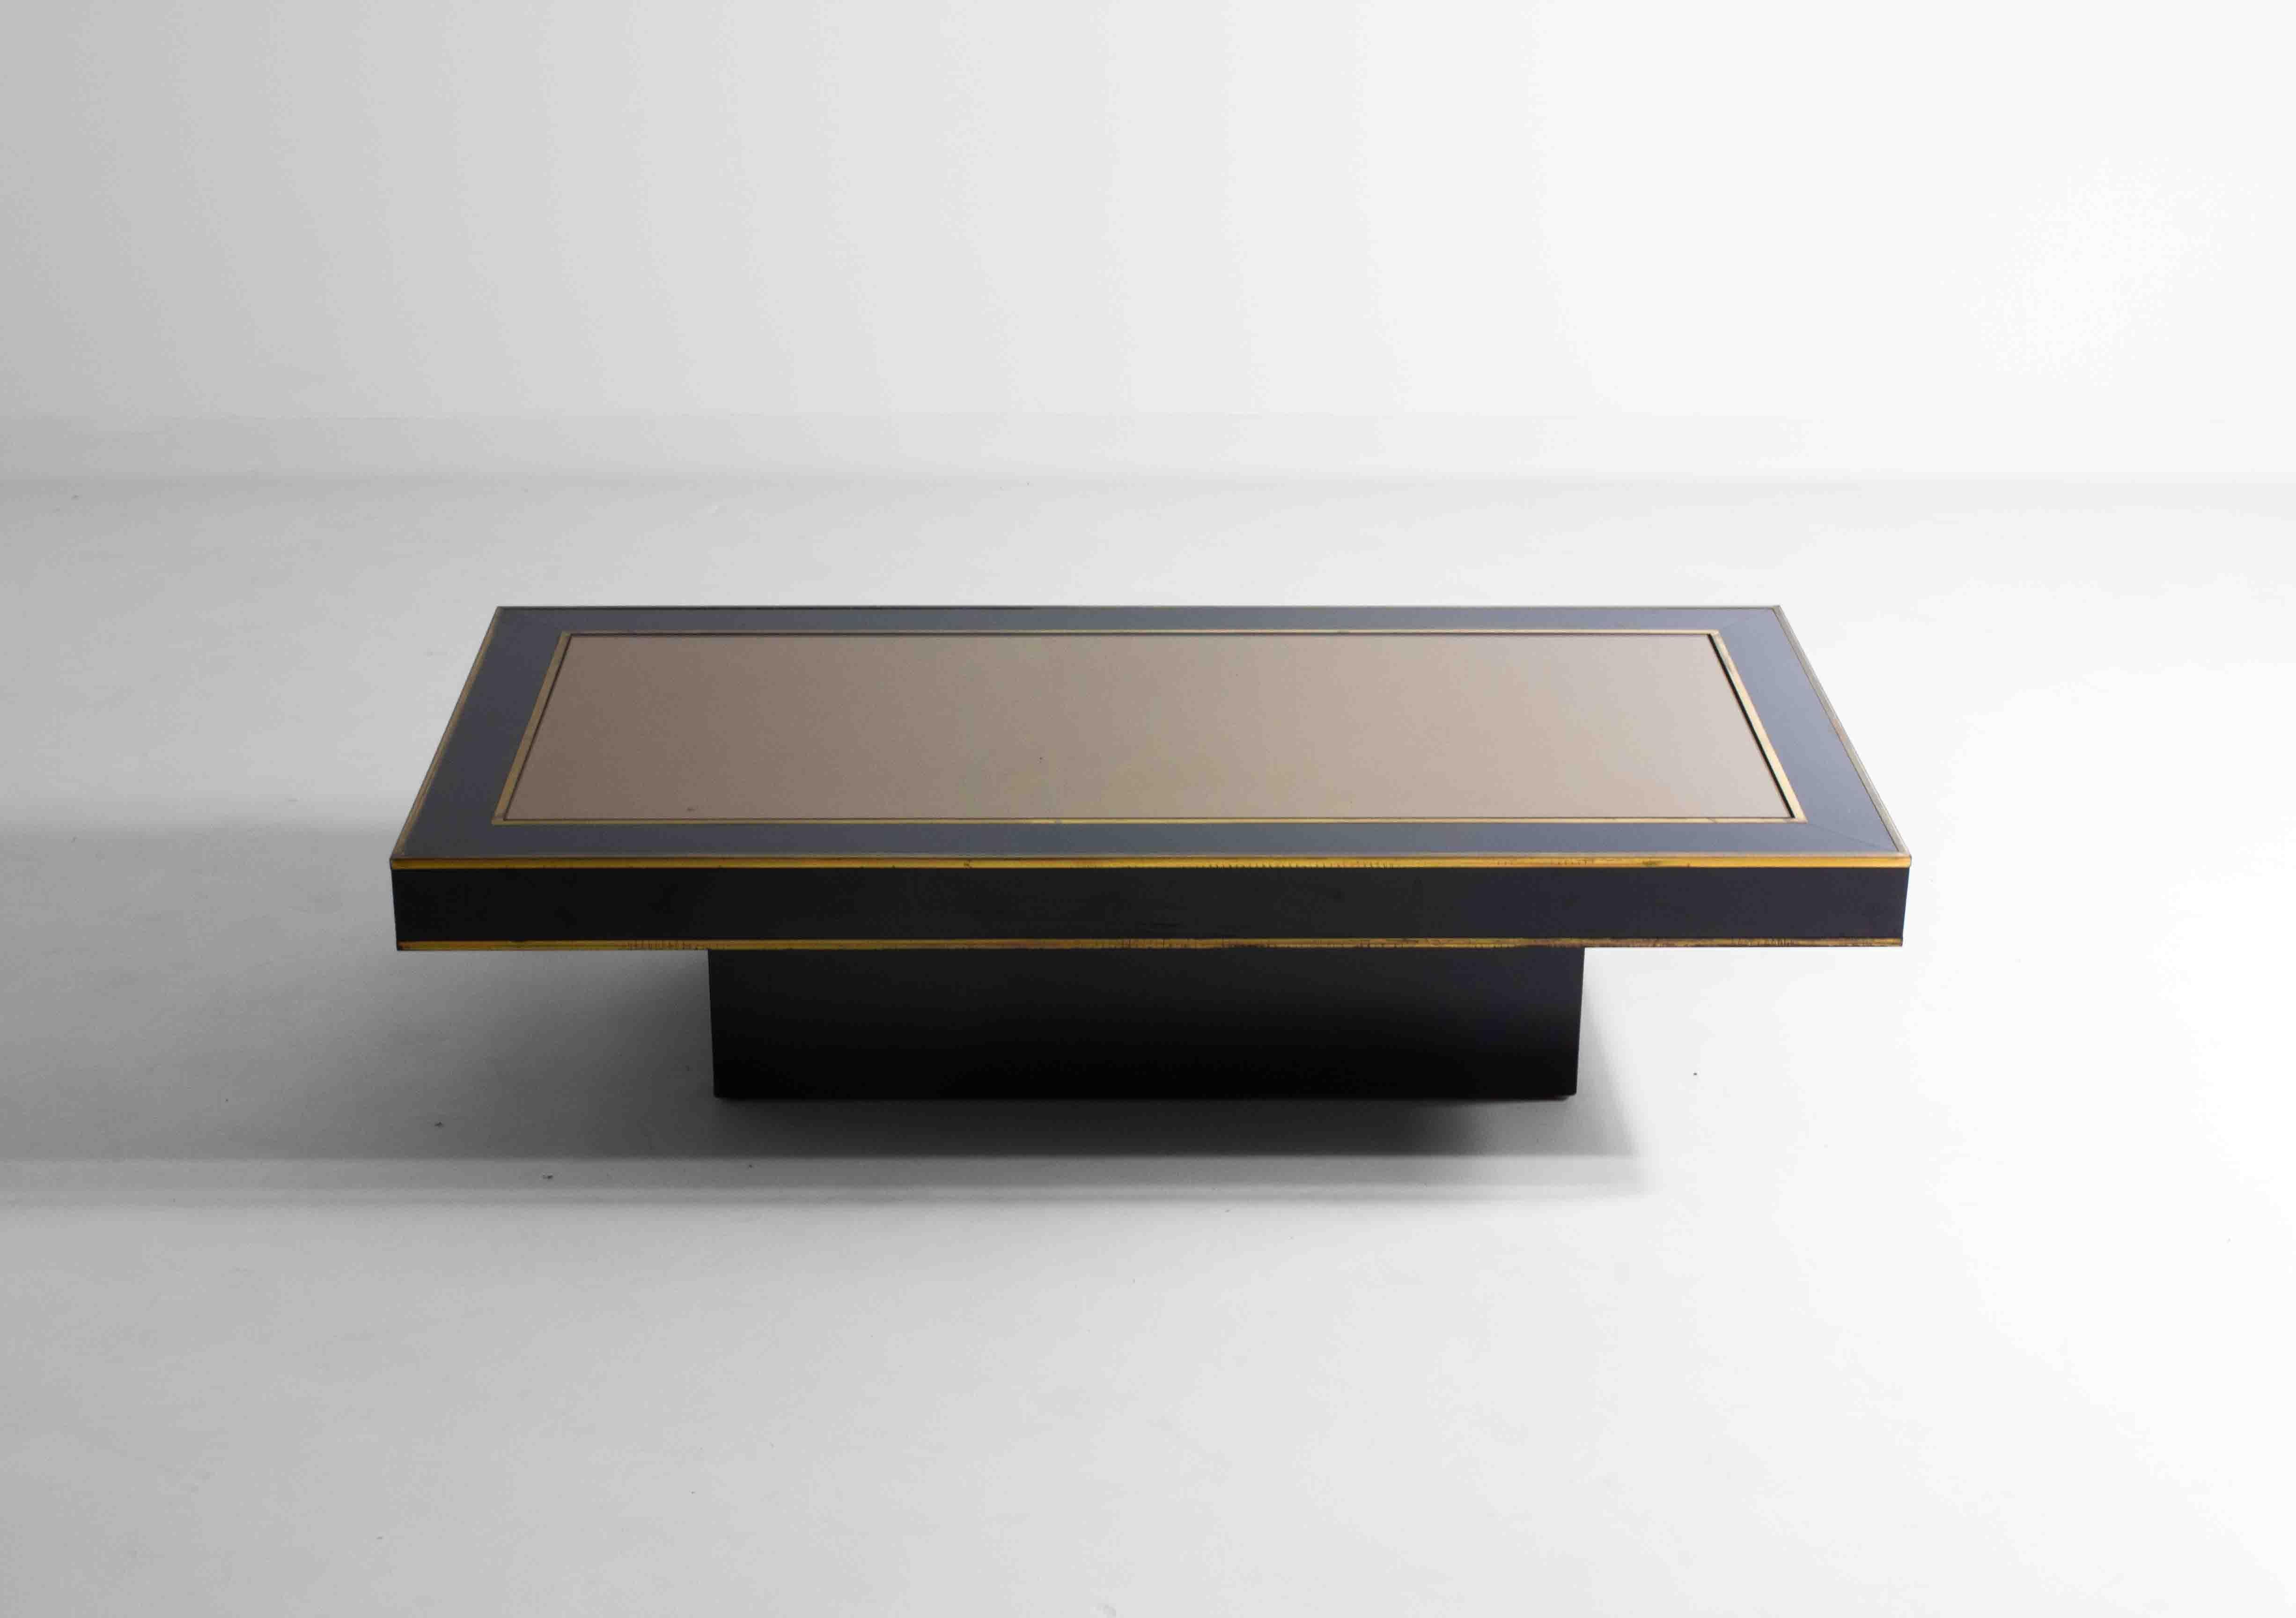 Cette table basse italienne aux lignes épurées, fabriquée en bois stratifié noir et dotée d'un plateau en miroir, s'intégrerait parfaitement dans un intérieur de style Miami Vice des années 1980. Les détails en laiton permettent à cette table basse